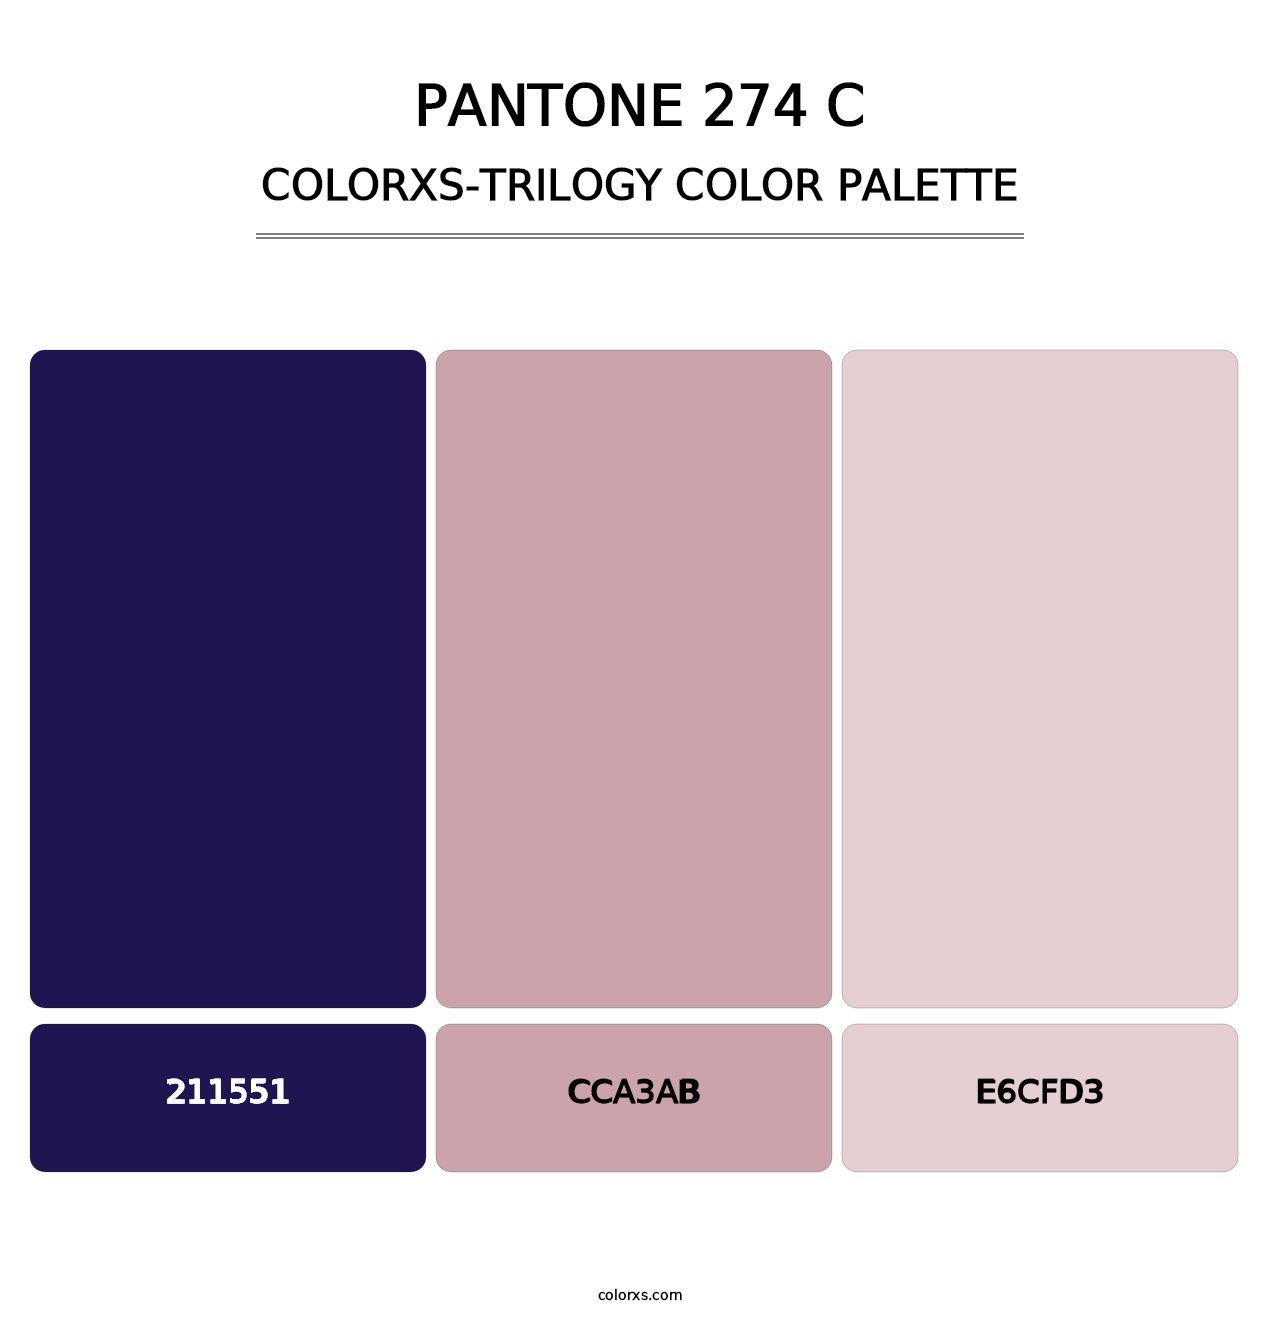 PANTONE 274 C - Colorxs Trilogy Palette